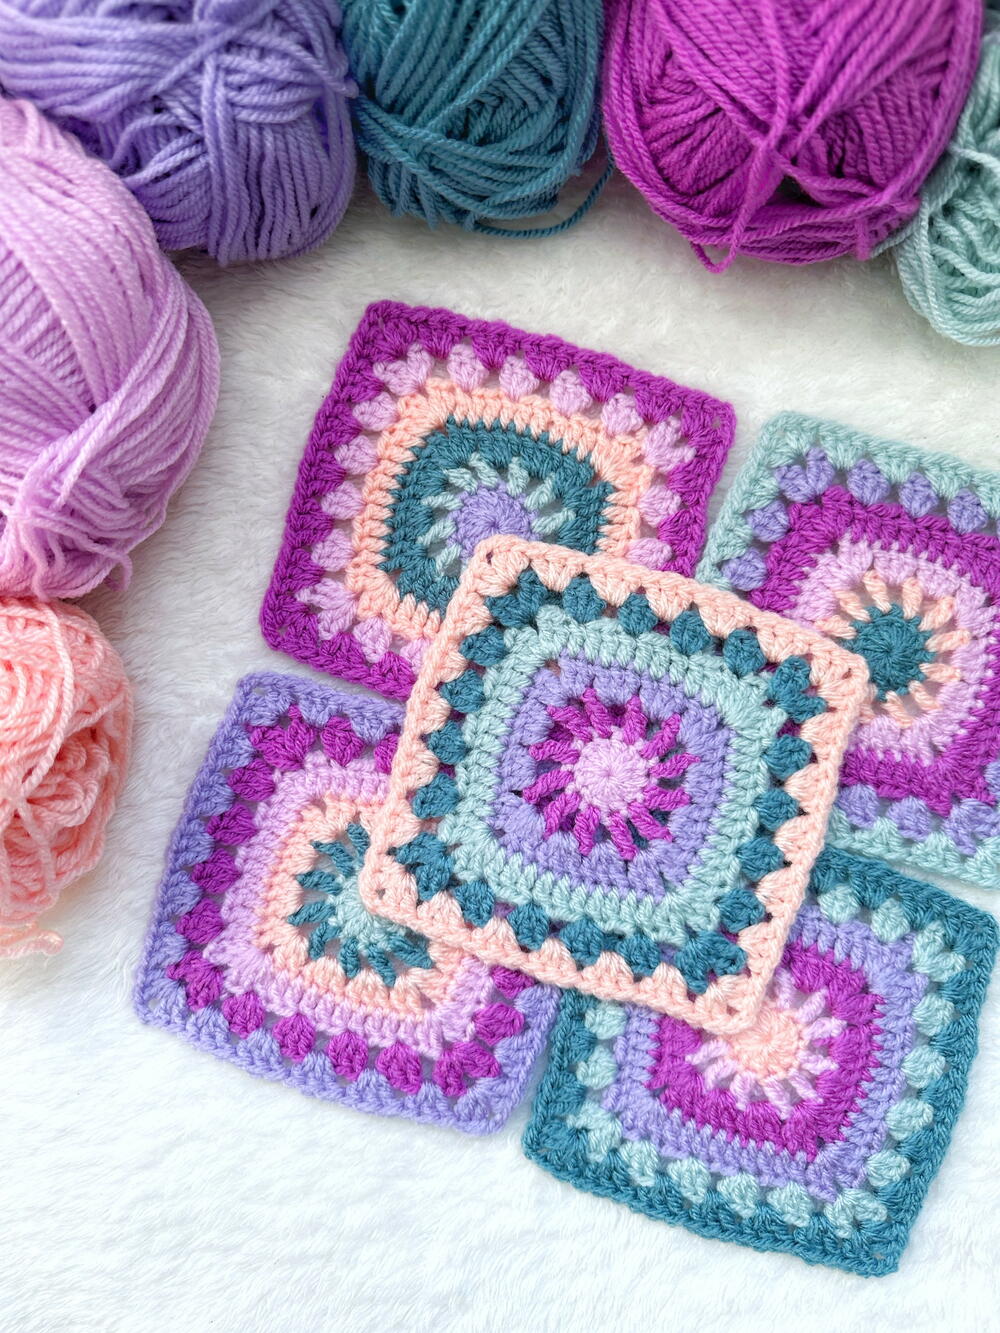 8 Patterns: How to Crochet a Skirt | FaveCrafts.com